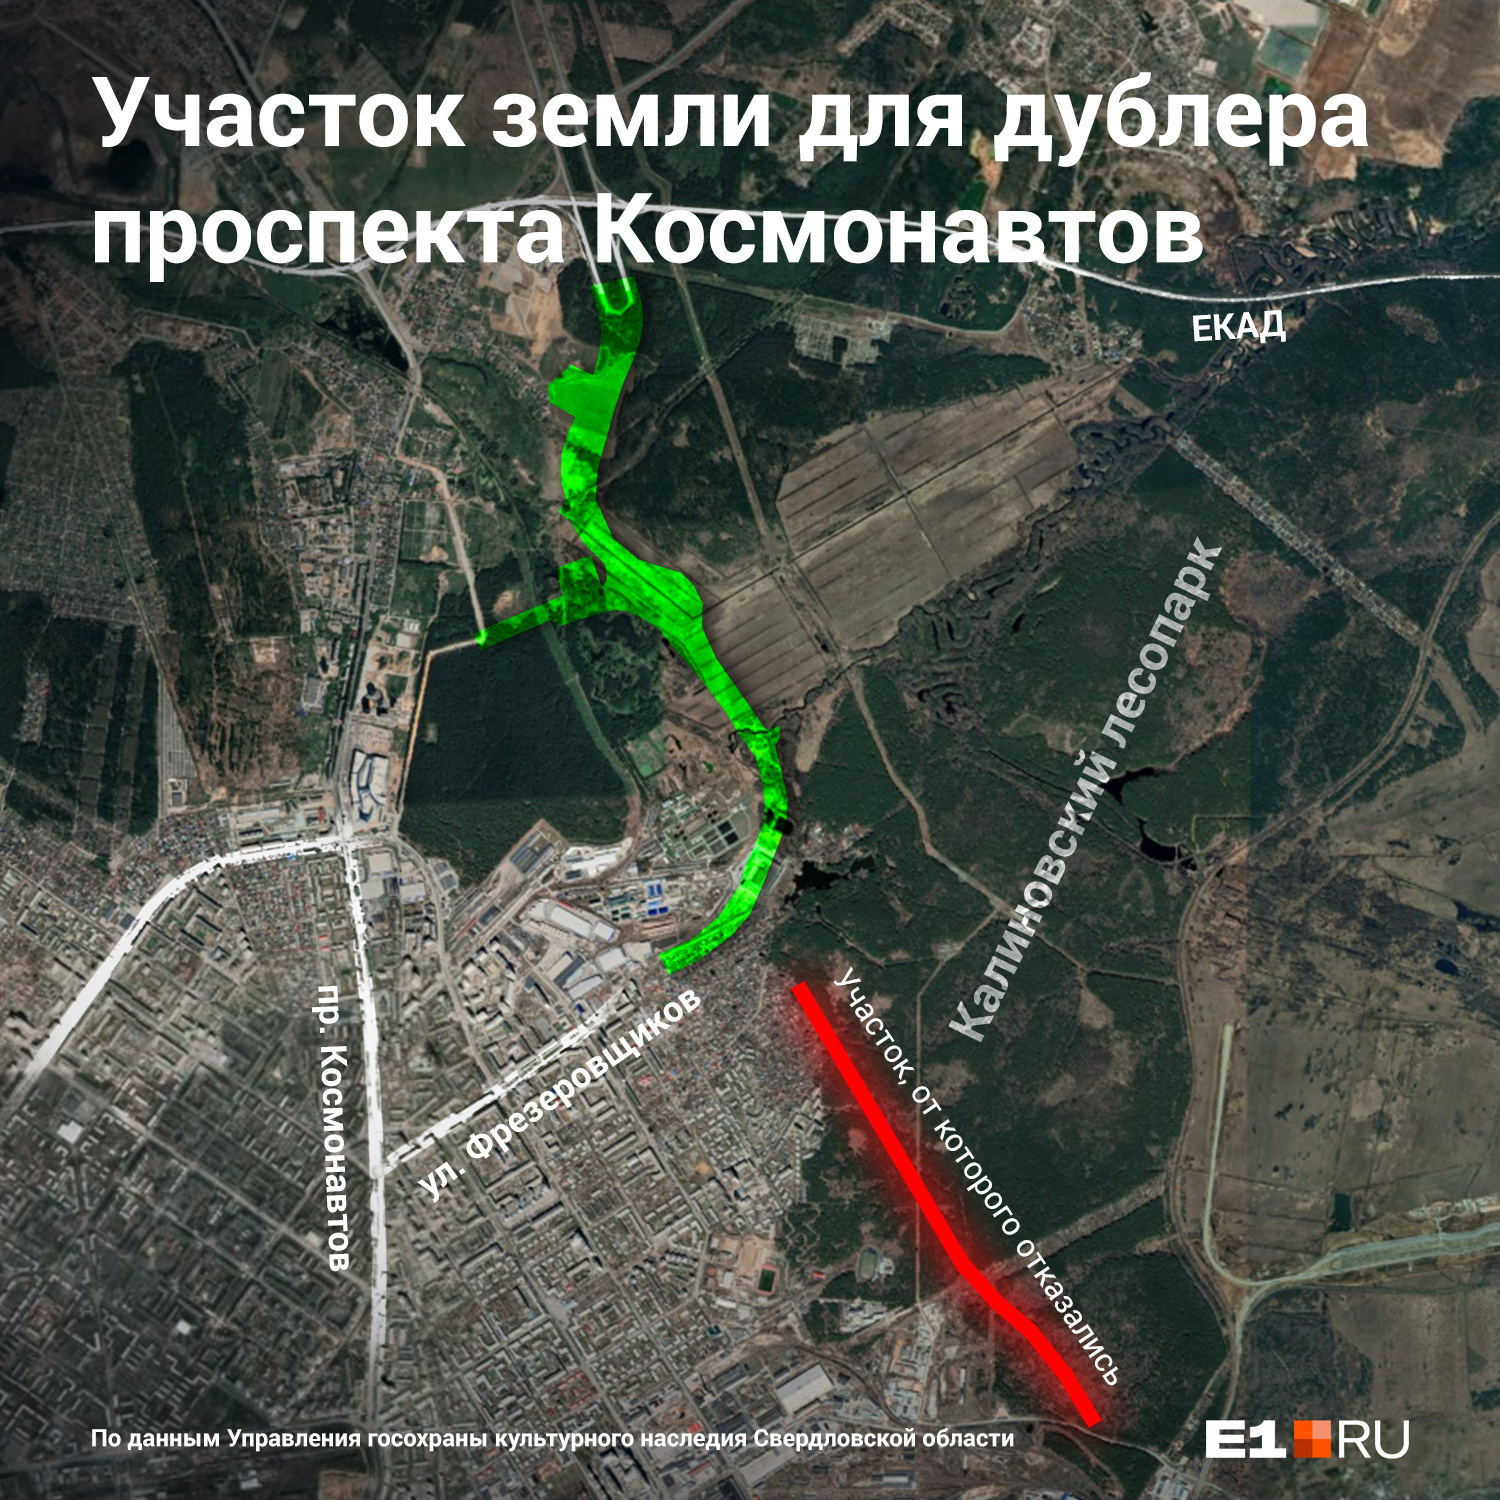 Новая дорога уведет трафик с проспекта Космонавтов в сторону ЕКАД и Верхней Пышмы